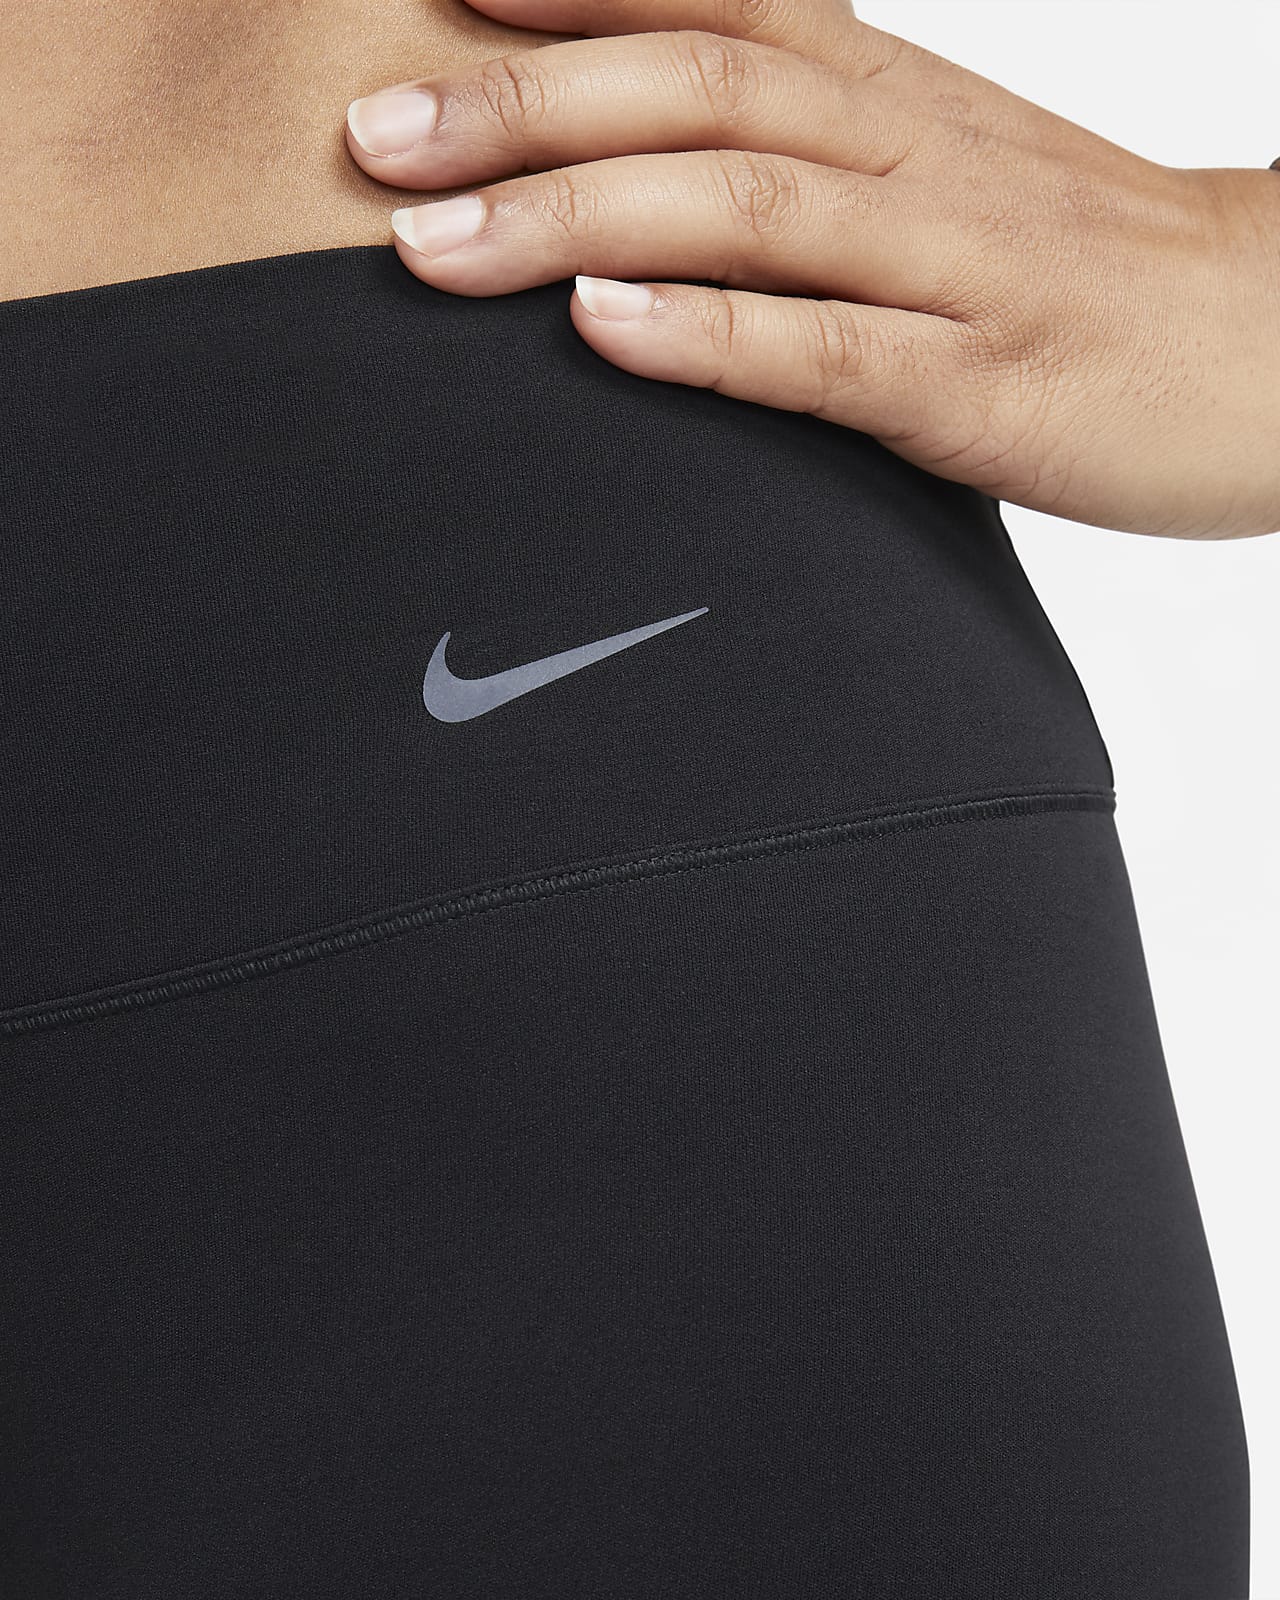 Nike Zenvy Women's Gentle-Support Mid-Rise Full-Length Leggings. UK